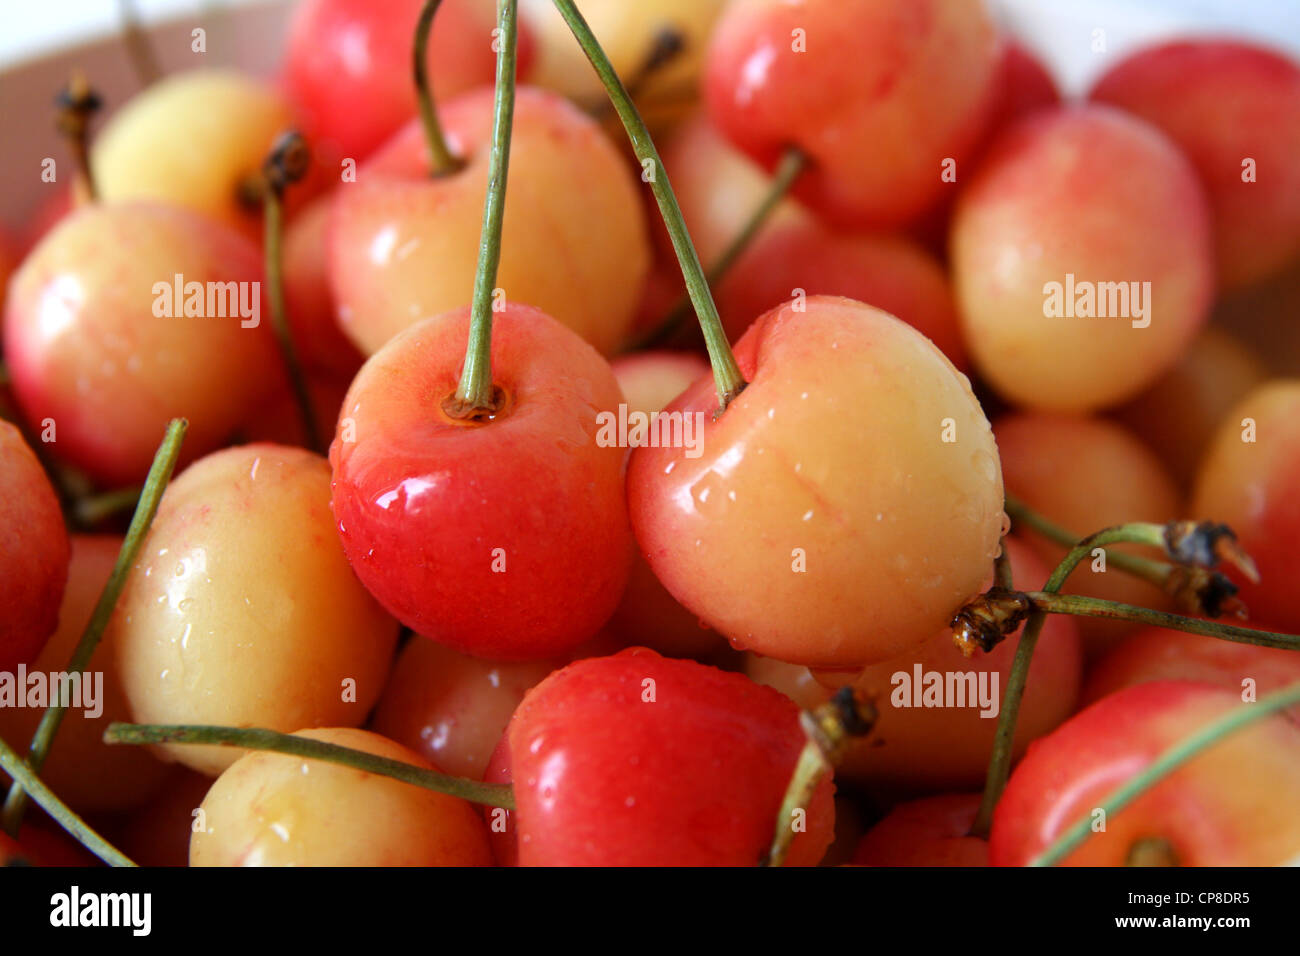 red and yellow rainier cherries Stock Photo